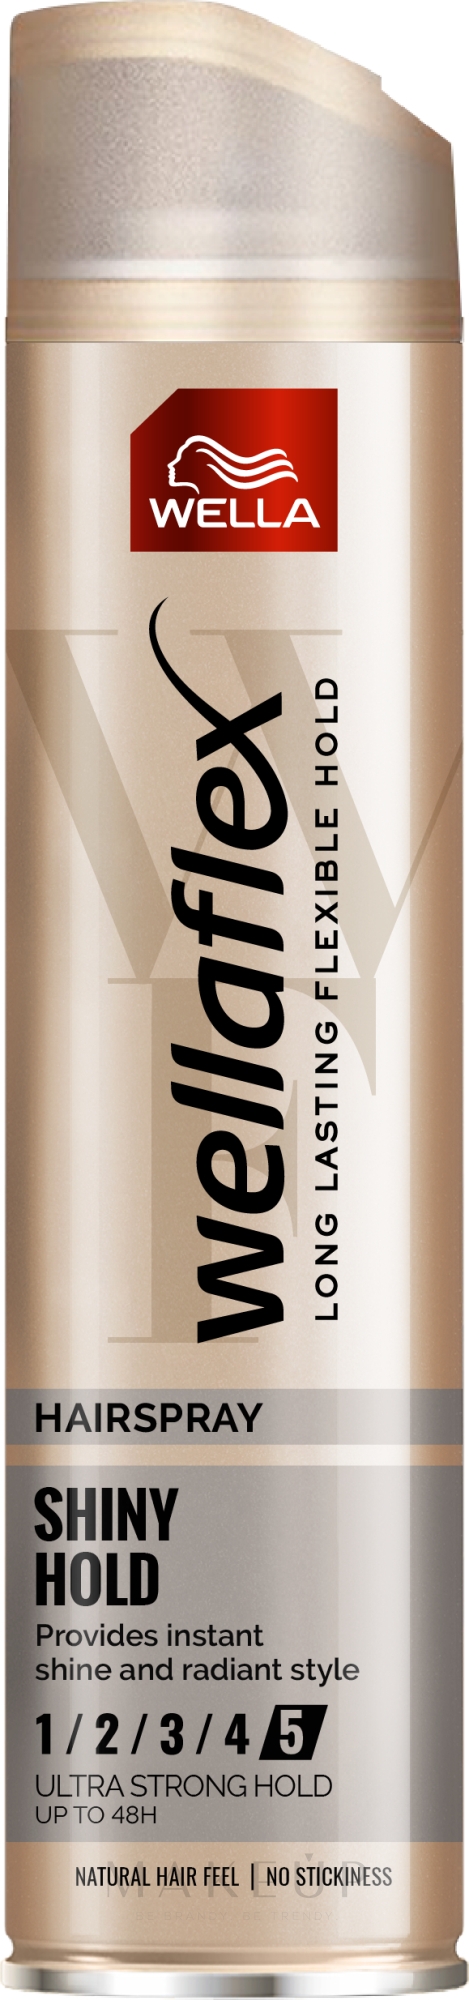 Haarfestiger für mehr Glanz Ultra starke Fixierung - Wella Wellaflex Glanz und Fixierung — Foto 250 ml